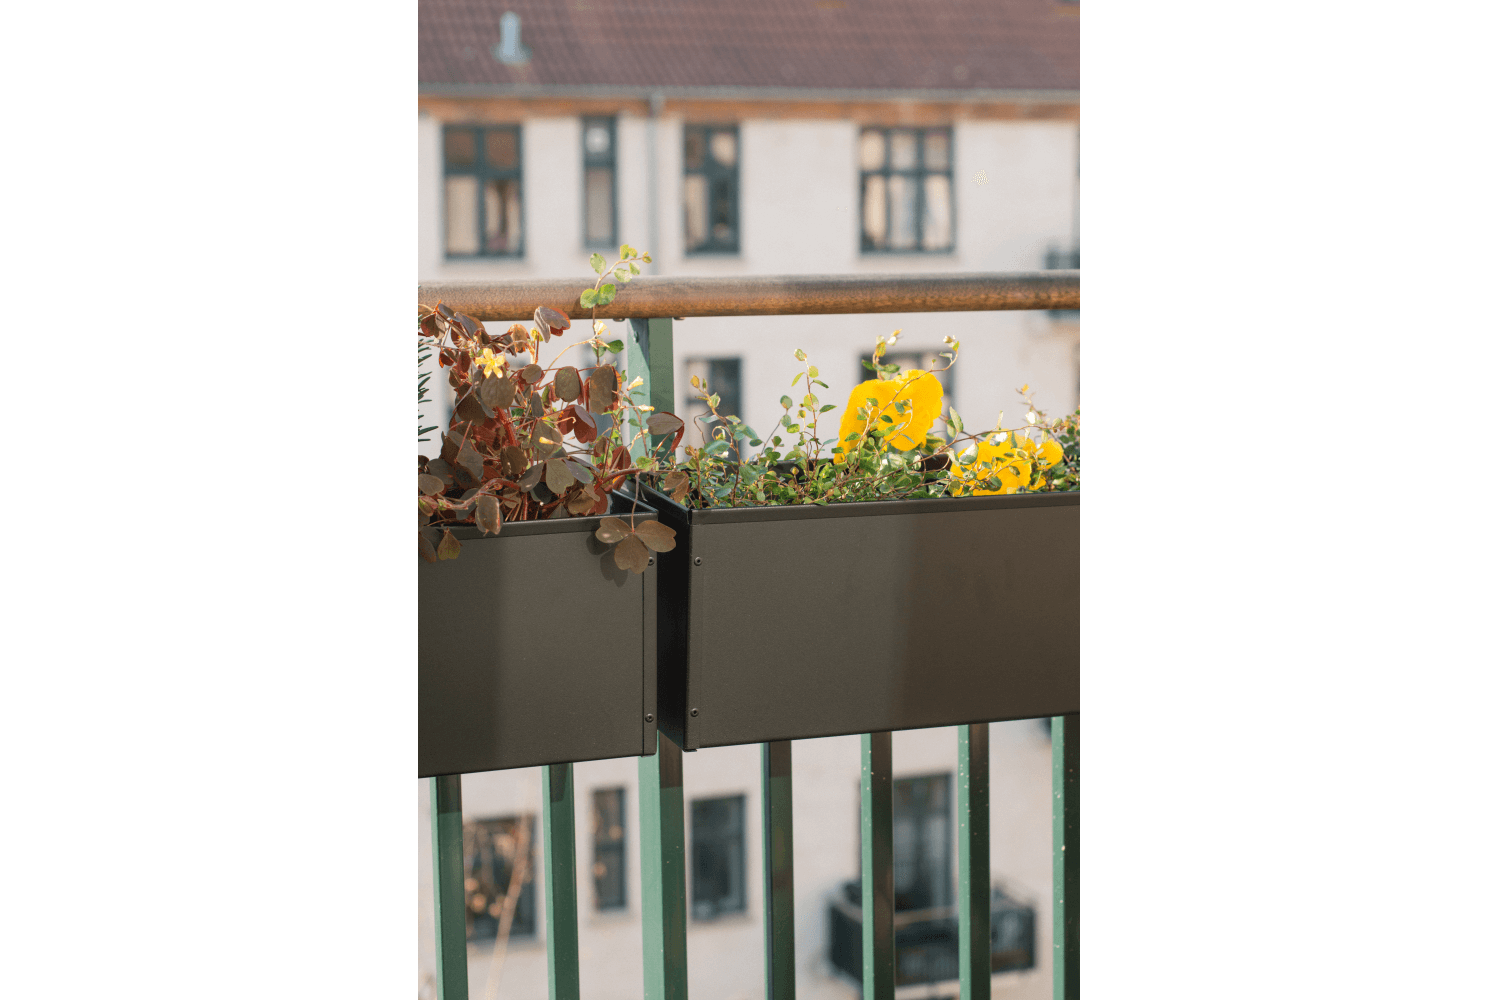 Liva Balcony Box, schwarz - 60 /80 /100 cm –